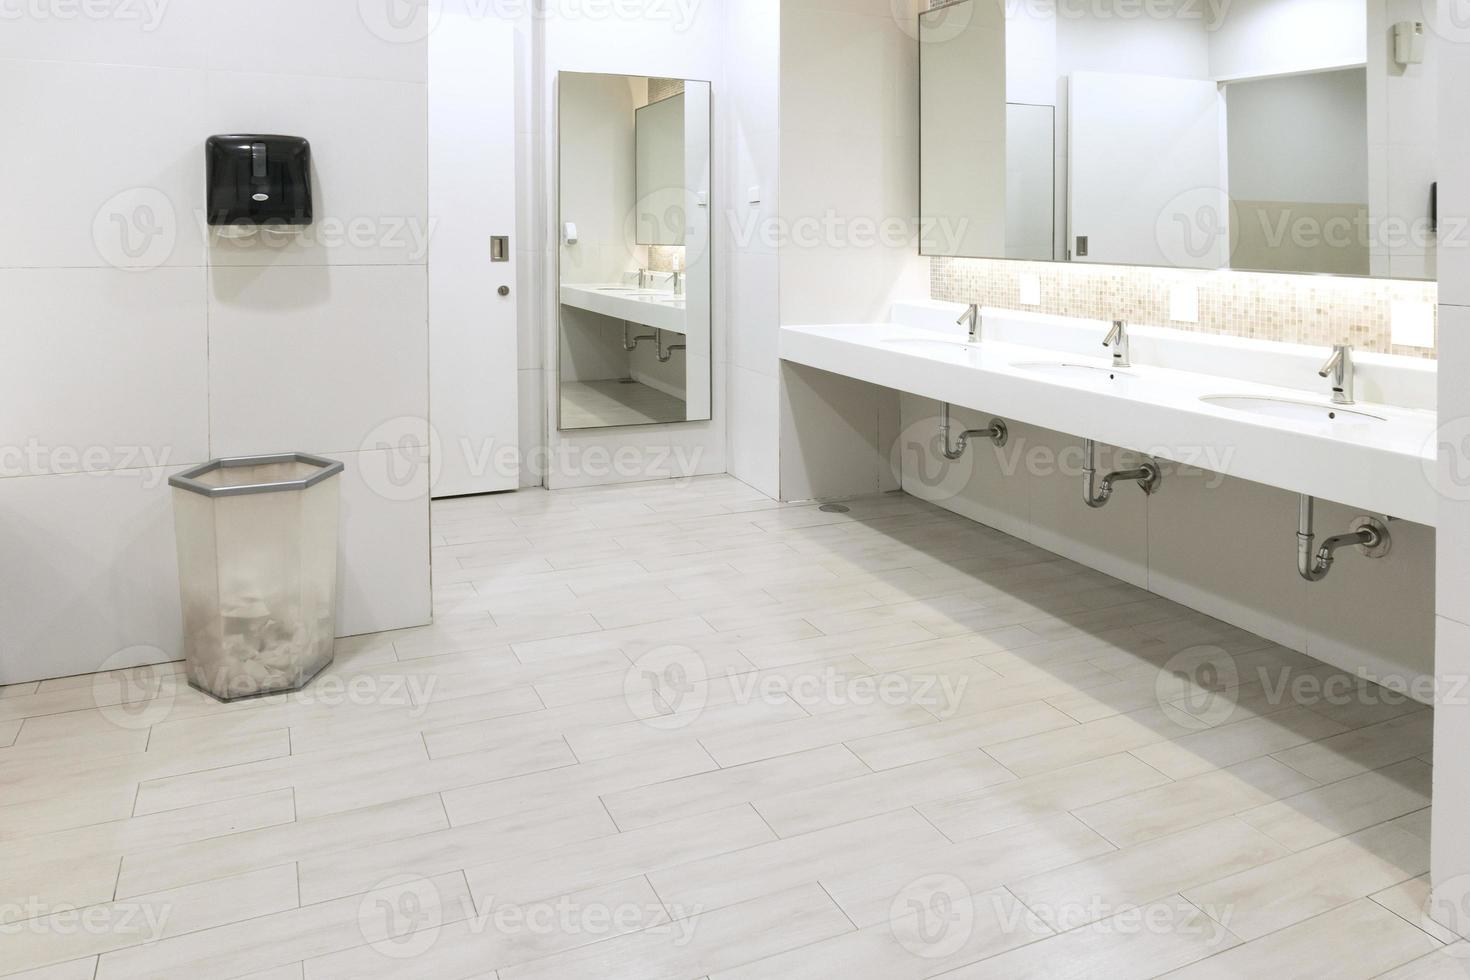 interior do banheiro público limpo no banheiro compartilhado há uma grande variedade de pias com espelhos, banheiro limpo foto